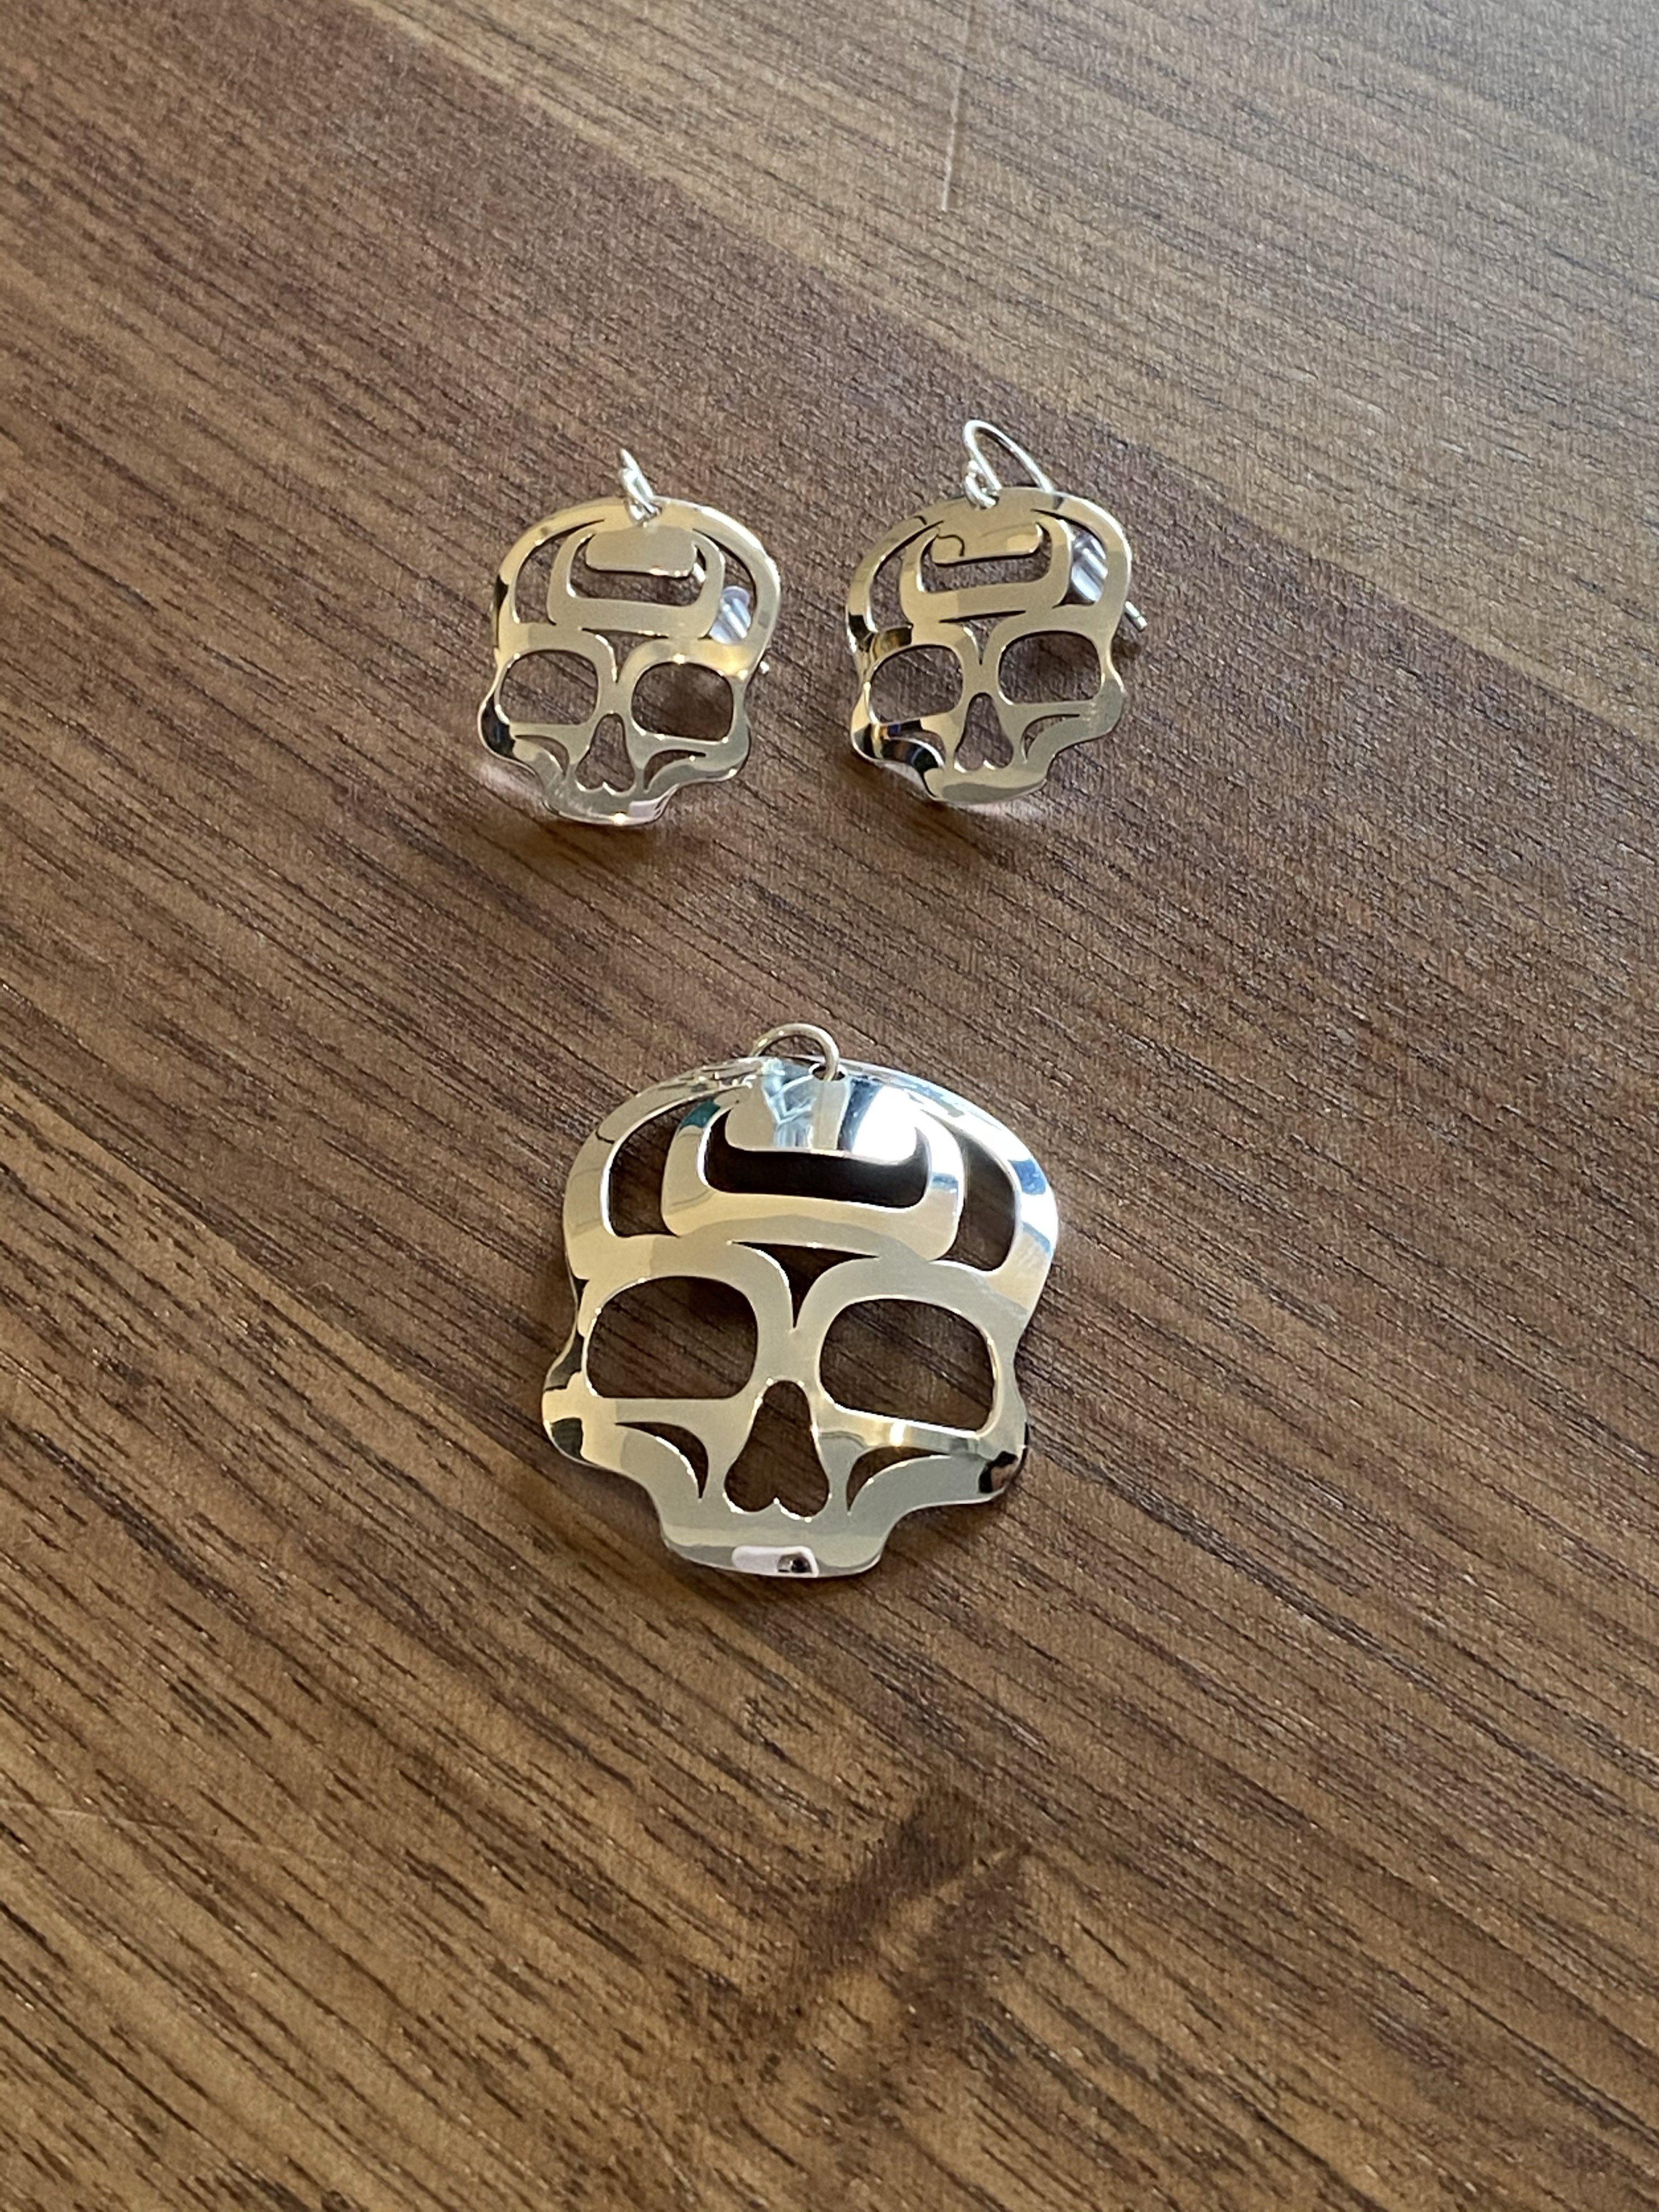 Ancestral Skull Earrings Sterling Silver 1" Earrings